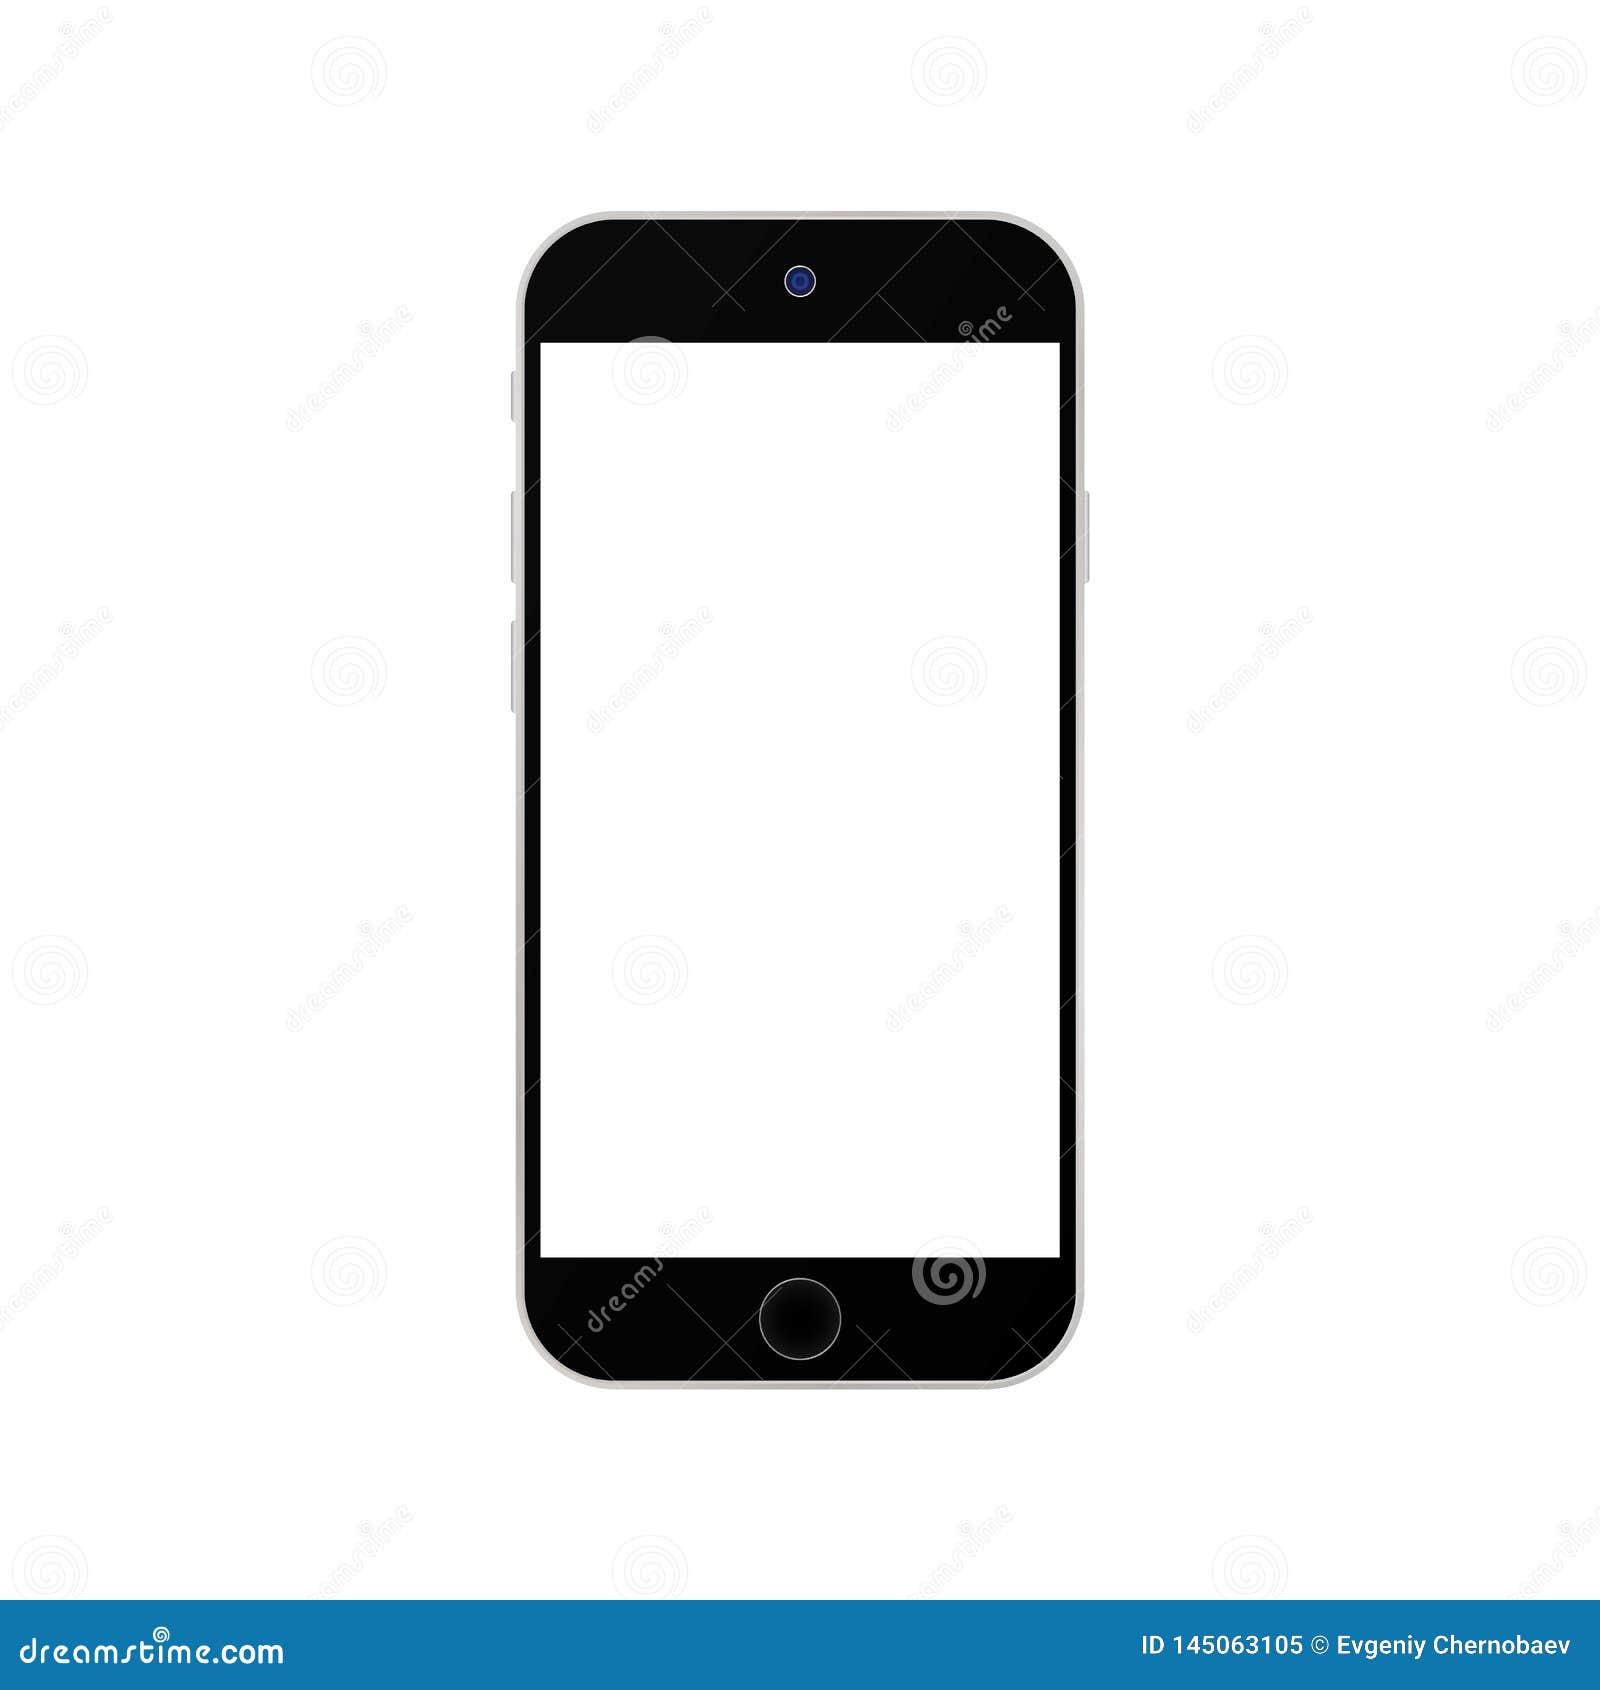 Bạn đang tìm kiếm một hình ảnh minh họa cho màn hình gọi của iPhone của bạn? Đừng bỏ lỡ bức tranh về chủ đề này! Nó sẽ cung cấp cho bạn một cái nhìn mới lạ và độc đáo về những thiết kế màn hình gọi iPhone đẹp mắt.